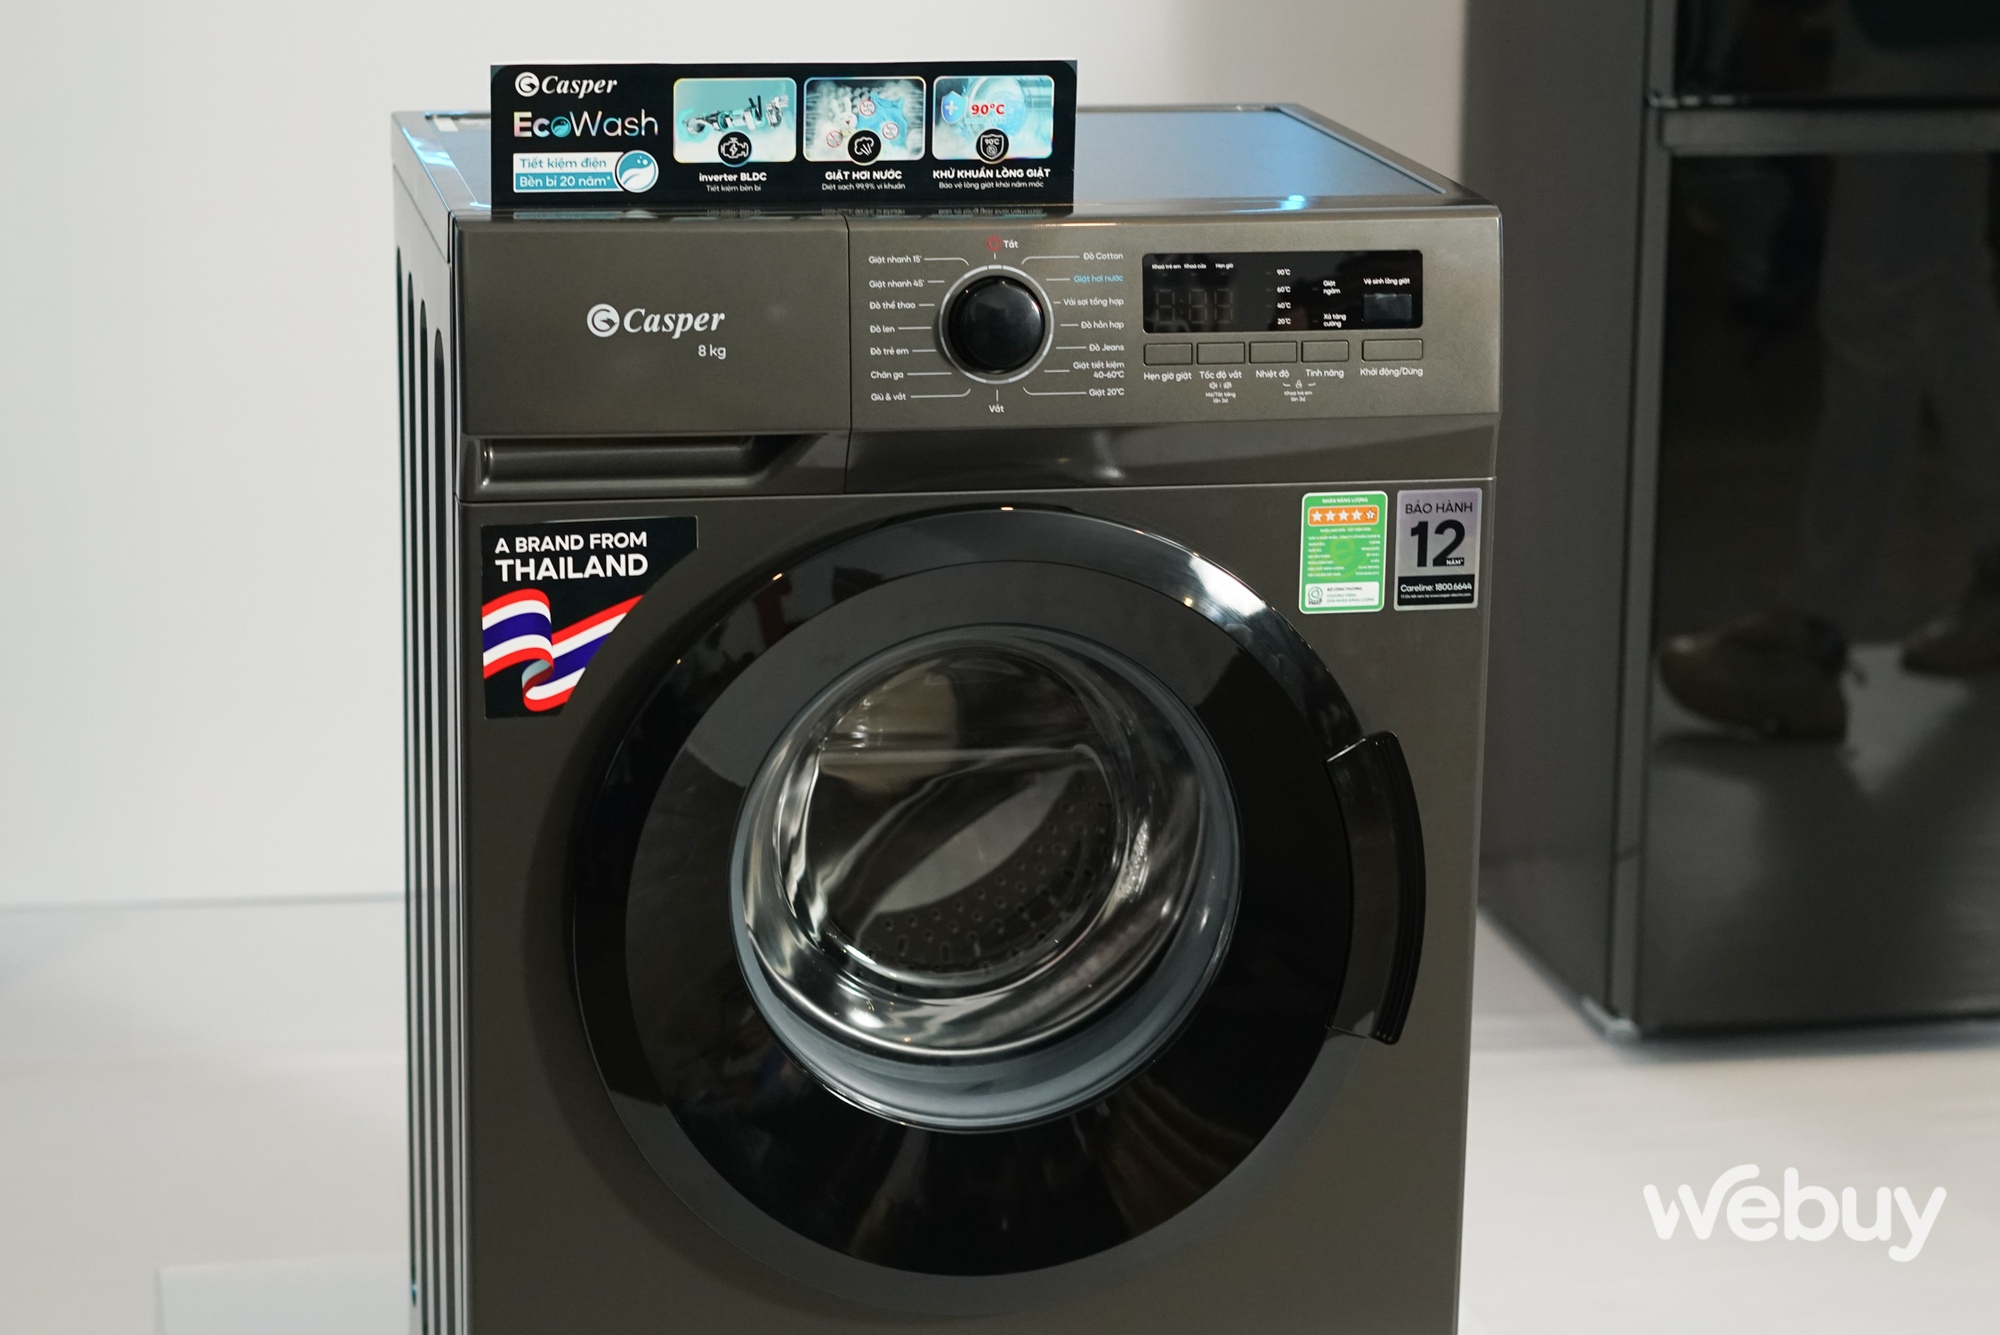 Casper ra mắt loạt máy giặt và tủ lạnh với nhiều tính năng cao cấp ở tầm giá dễ tiếp cận - Ảnh 4.